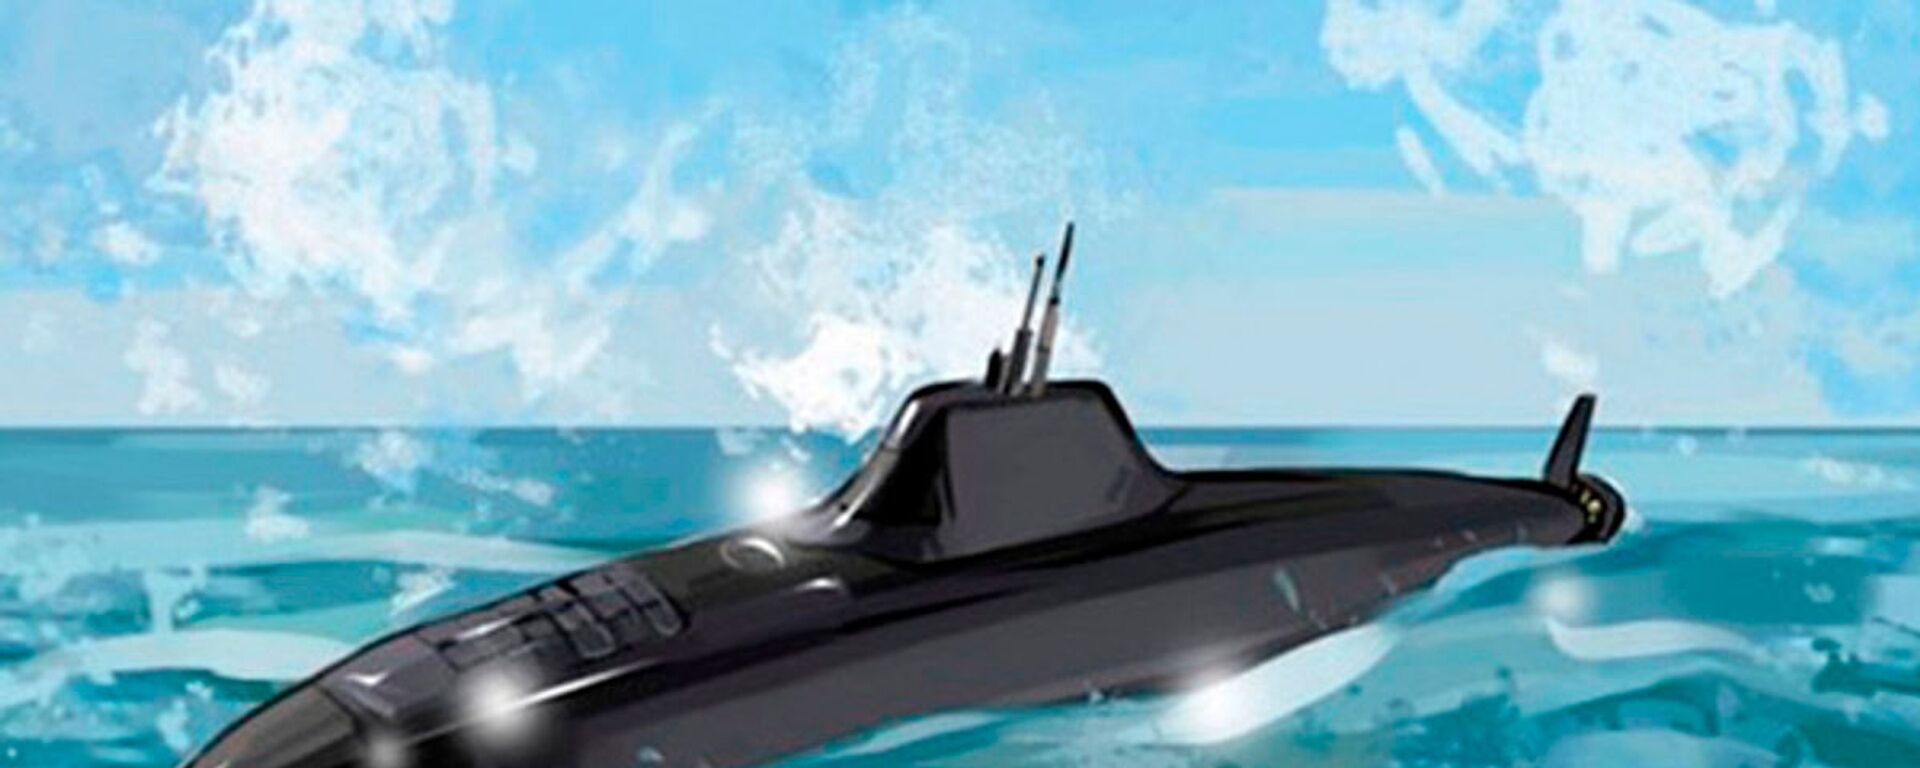 「ハスキー」第5世代原子力潜水艦のイメージ図 - Sputnik 日本, 1920, 07.05.2022